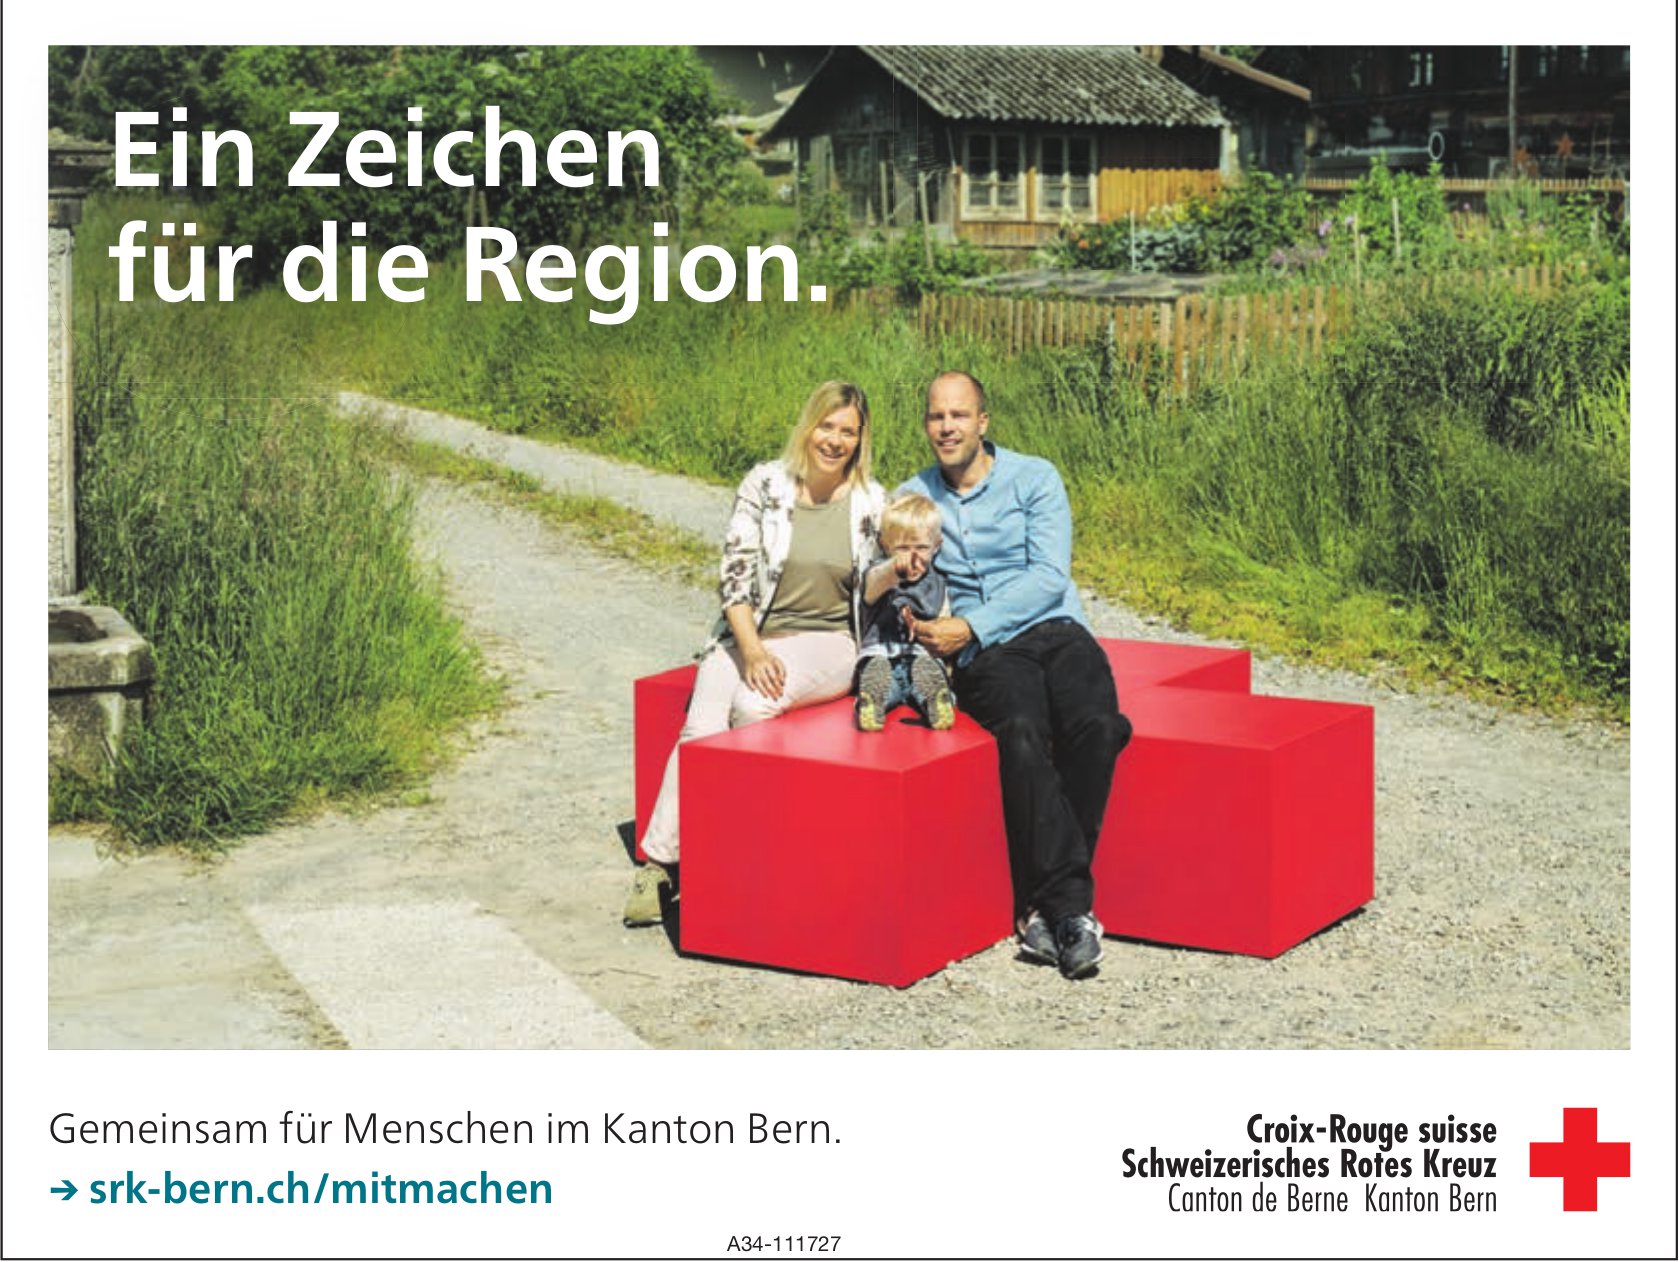 Schweizerisches Rotes Kreuz, Kanton Bern - Ein Zeichen für die Region.